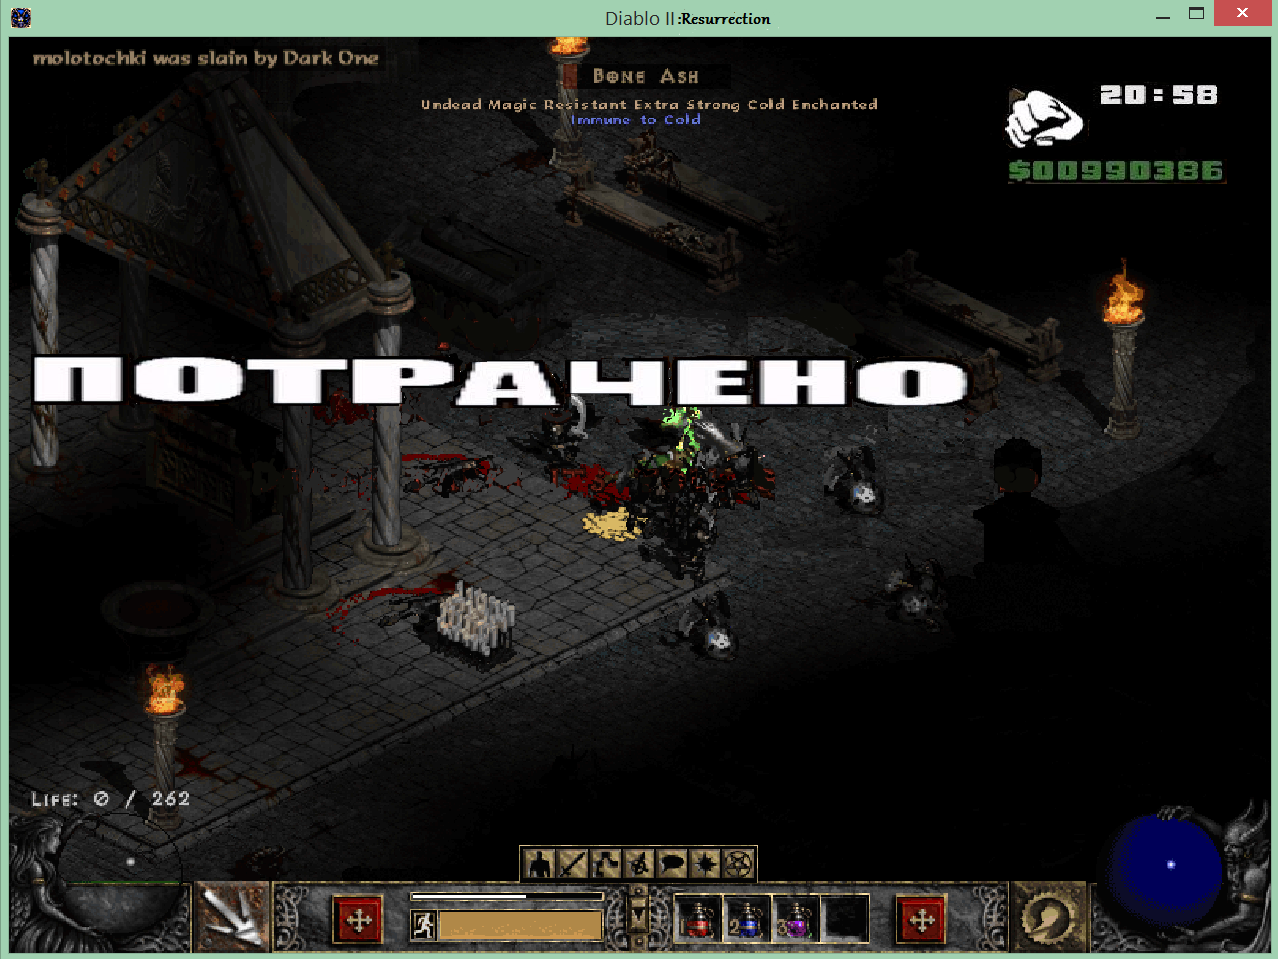 Diablo 2 полная русская версия скачать торрент бесплатно на пк